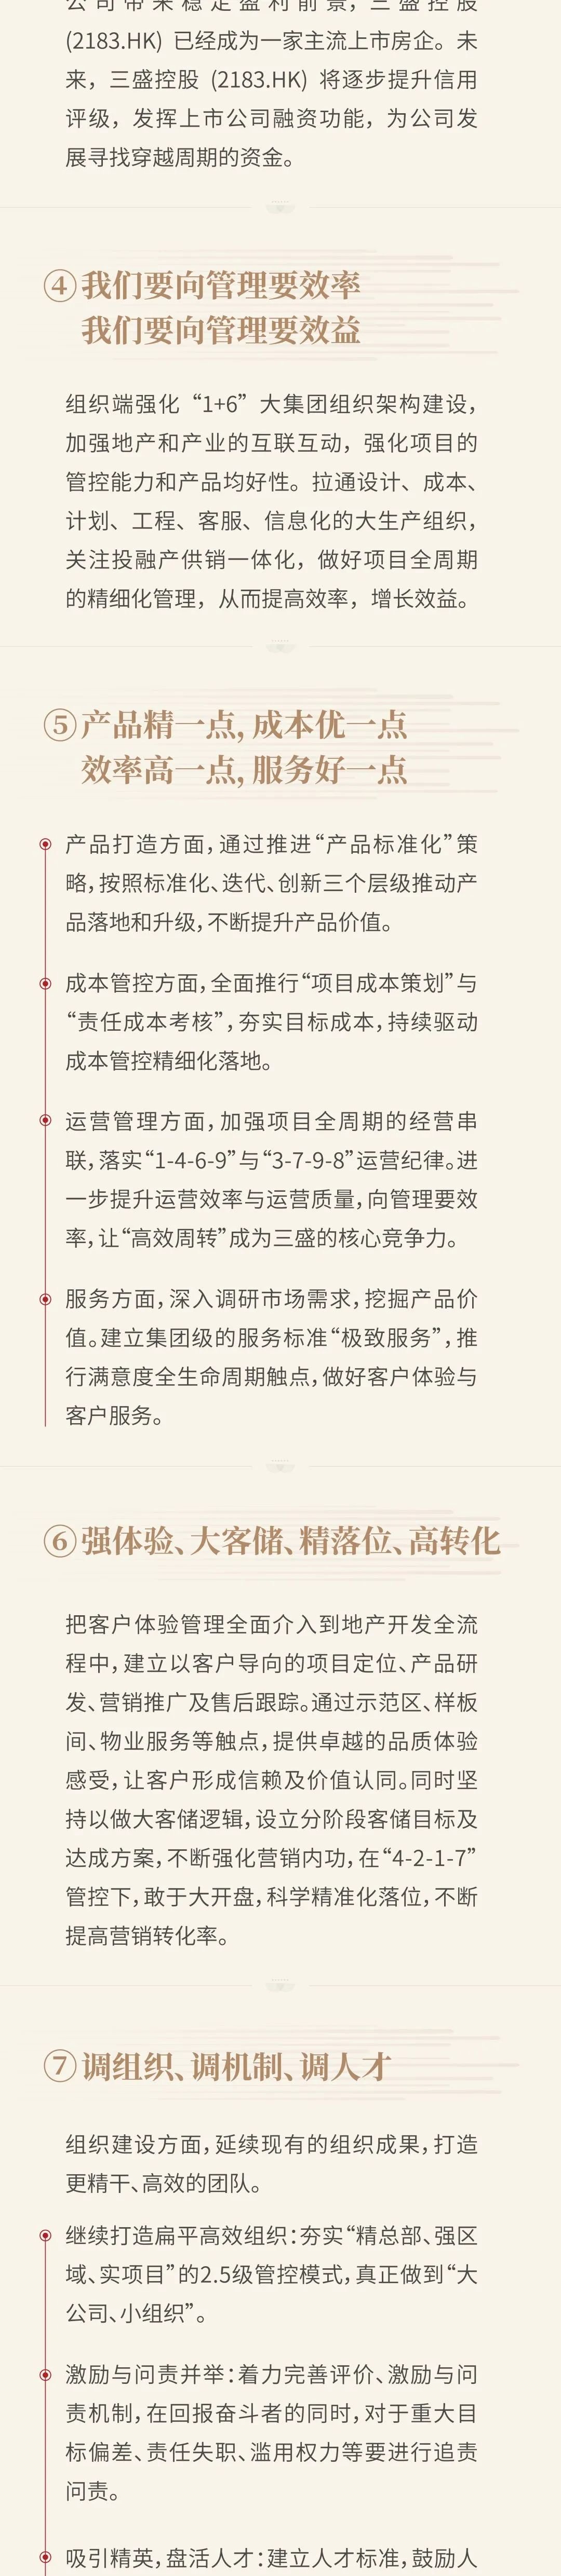 10句话读懂，三盛集团董事长林荣滨年度工作报告